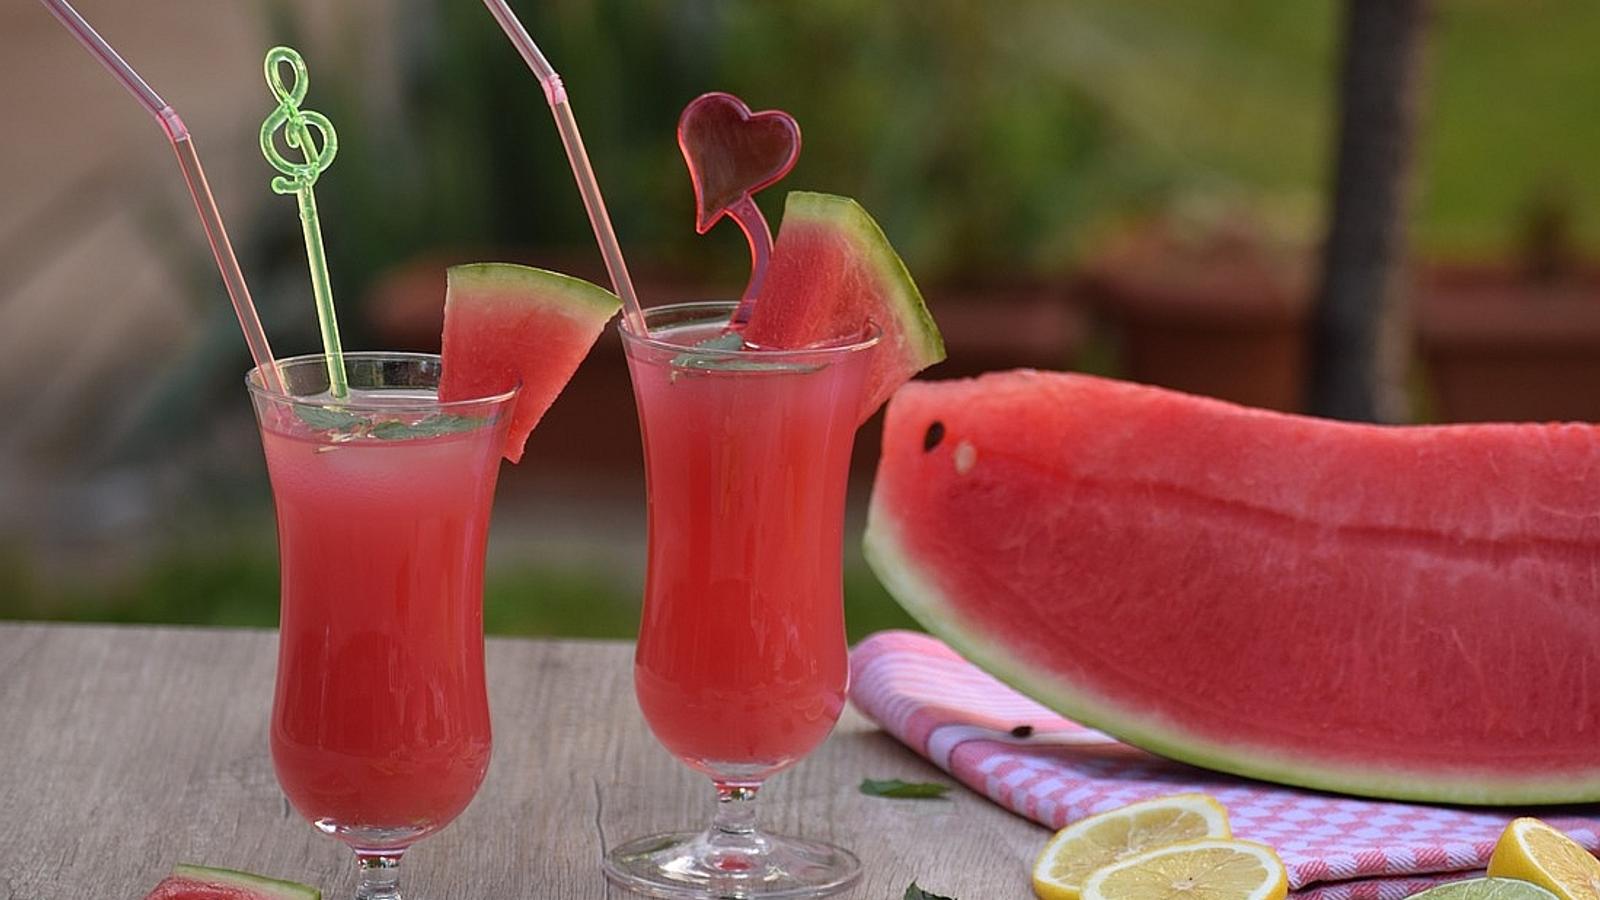 Margaritas roses au melon d'eau